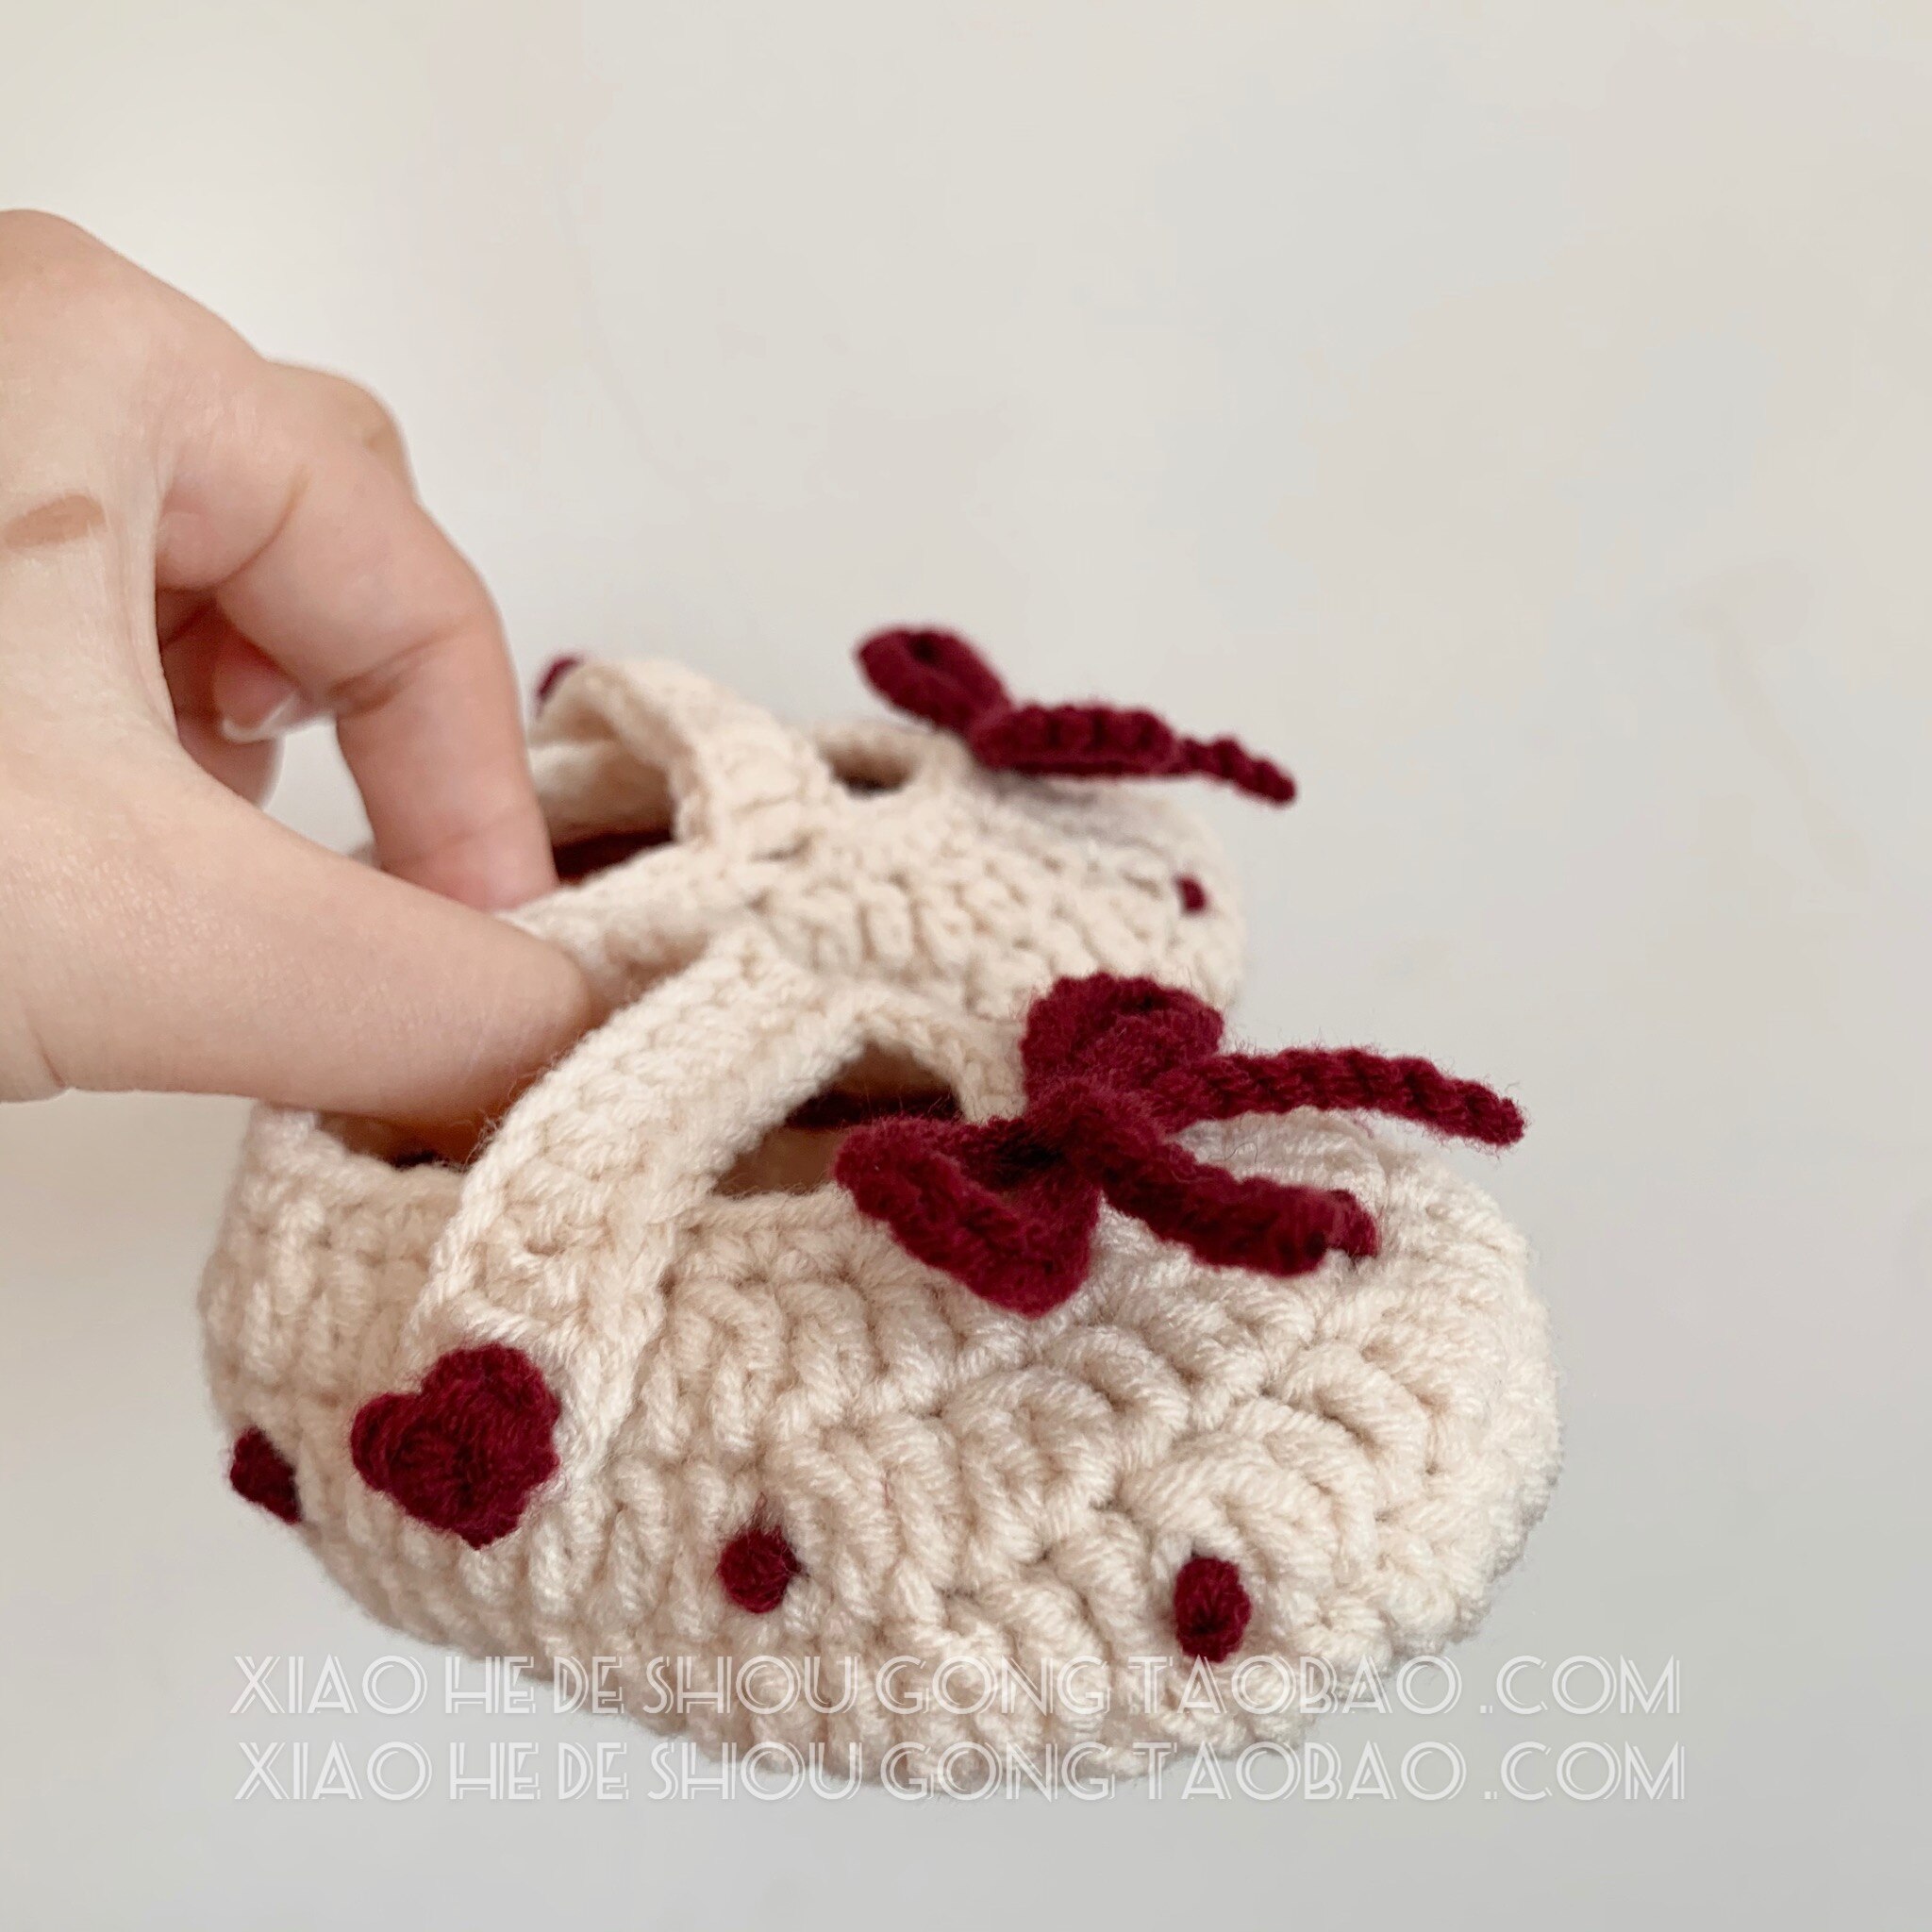 Originale håndvævede uld babysko søde polka dot bow baby småbarnssko 100- dages banket 0-6 måneder